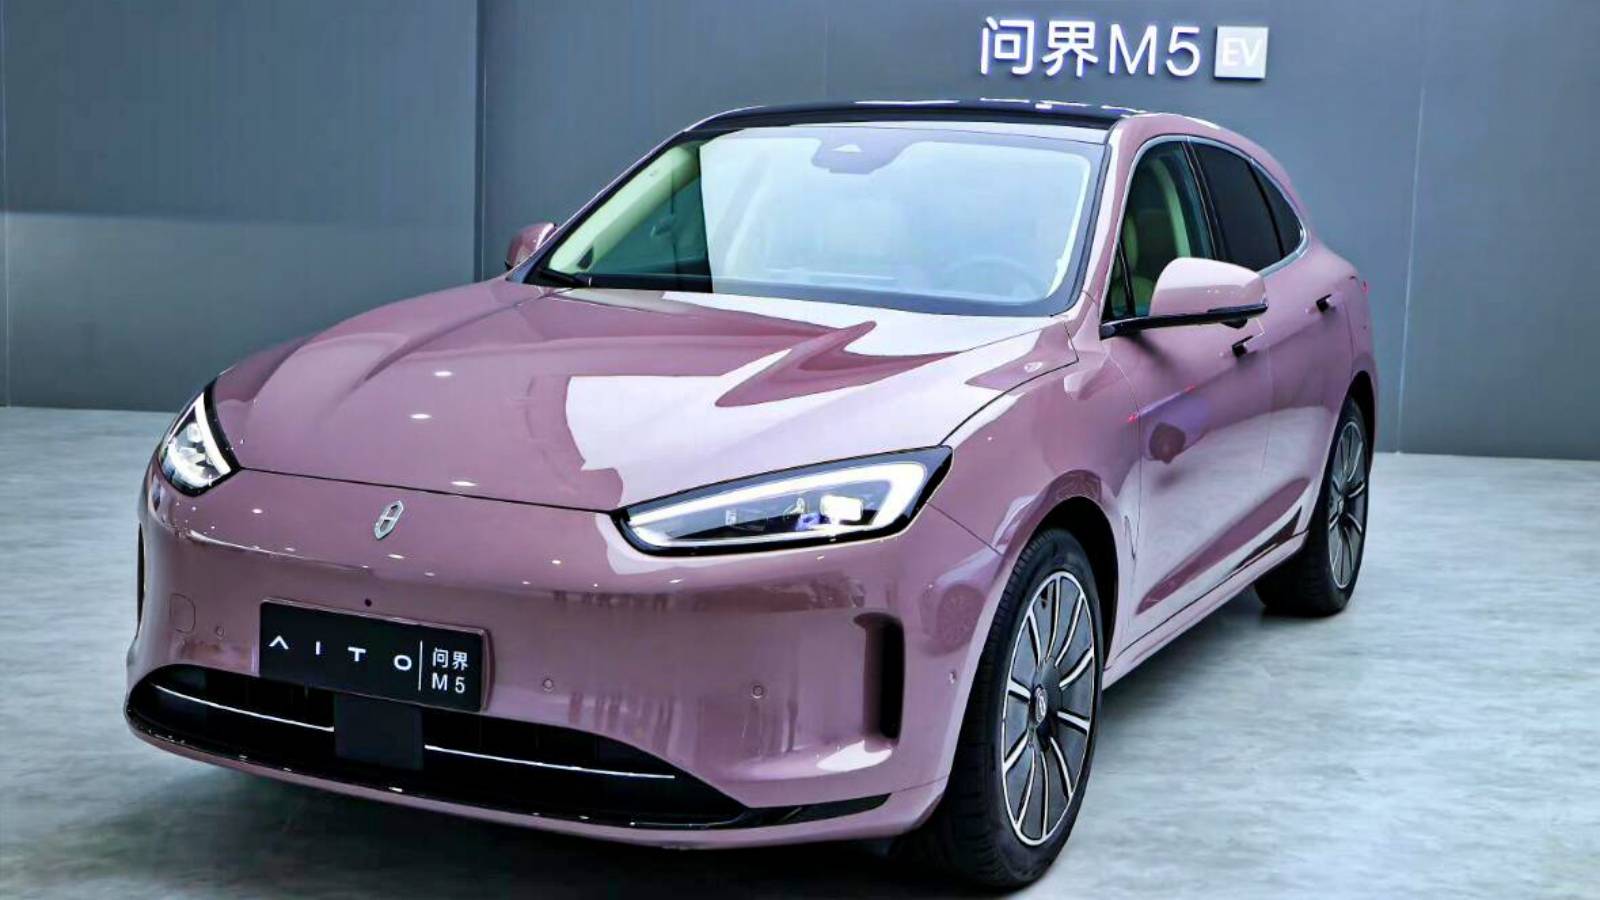 Huawei lancia ufficialmente Aito M5, la nuova auto elettrica del marchio dedicato